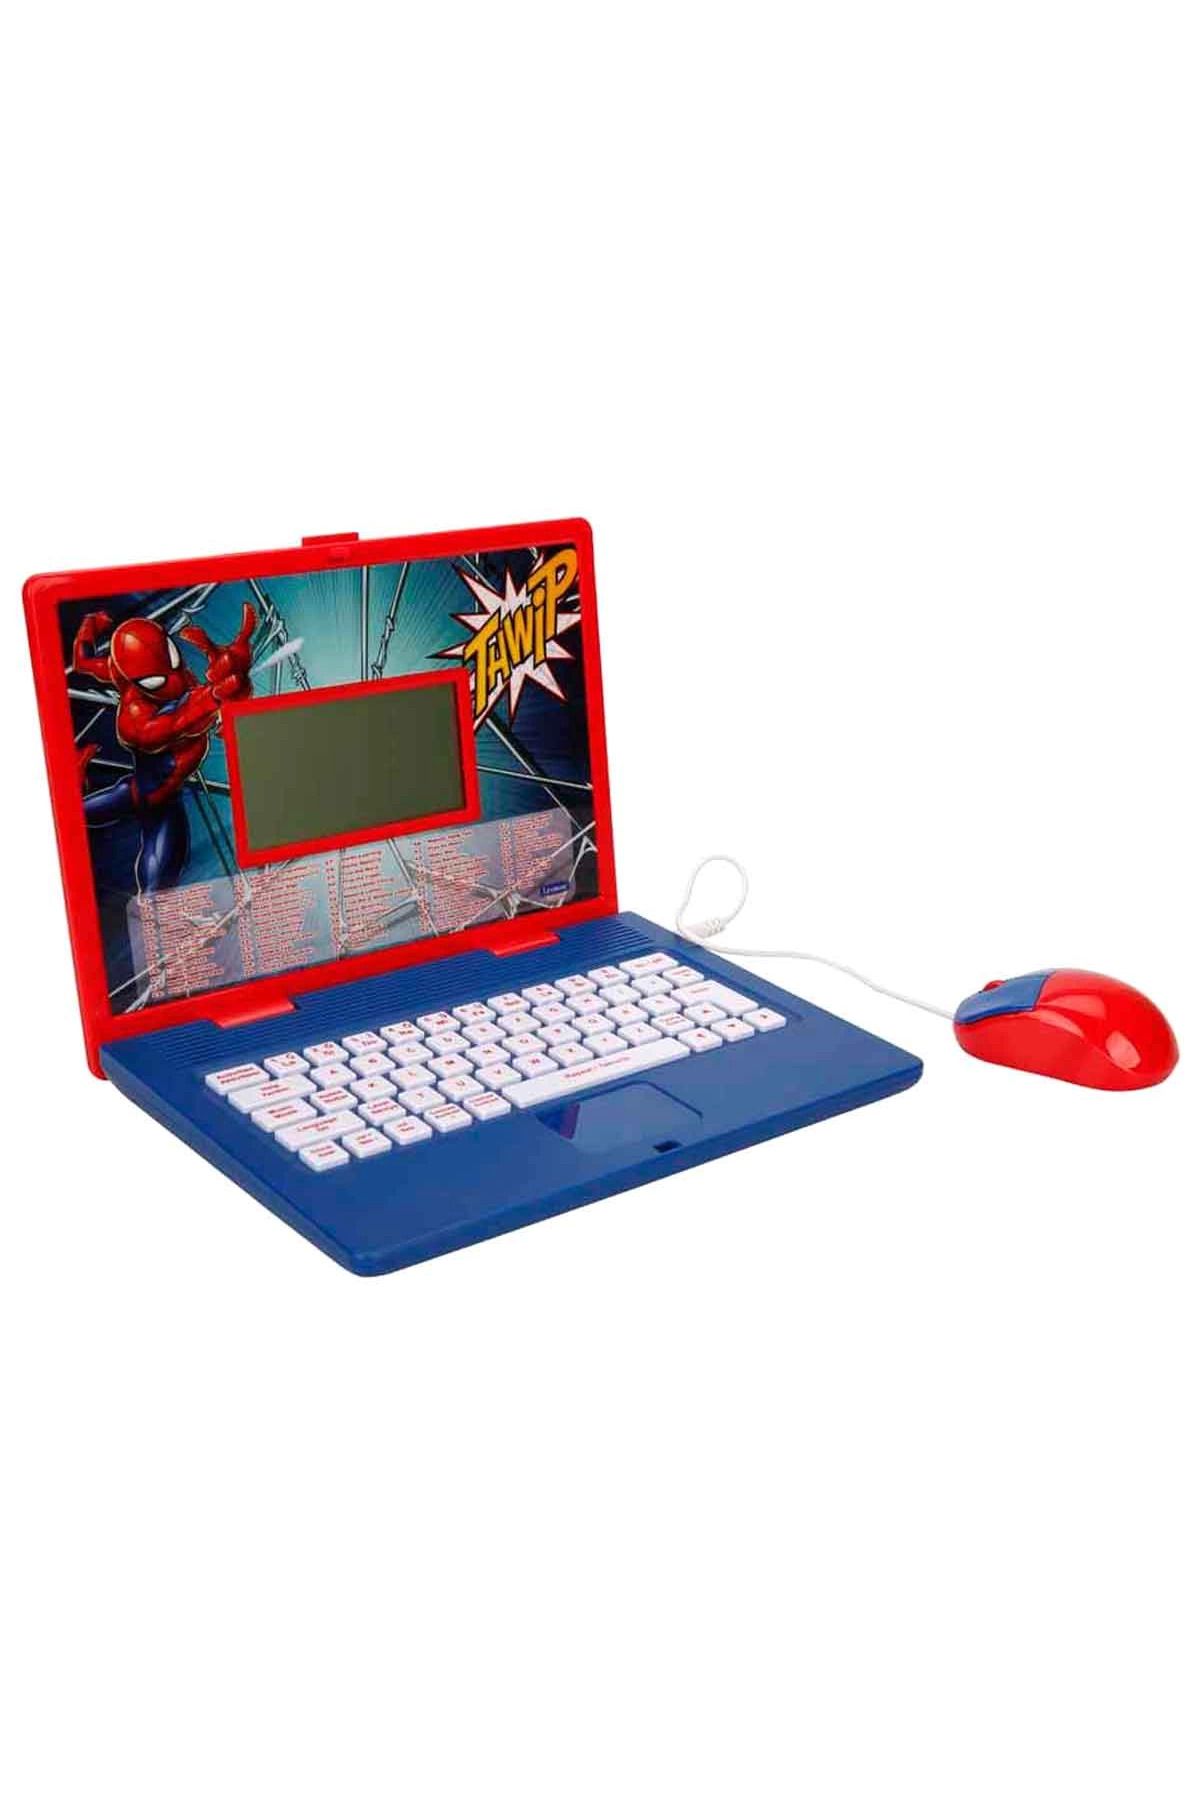 Sunman Spiderman İngilizce Türkçe Laptop